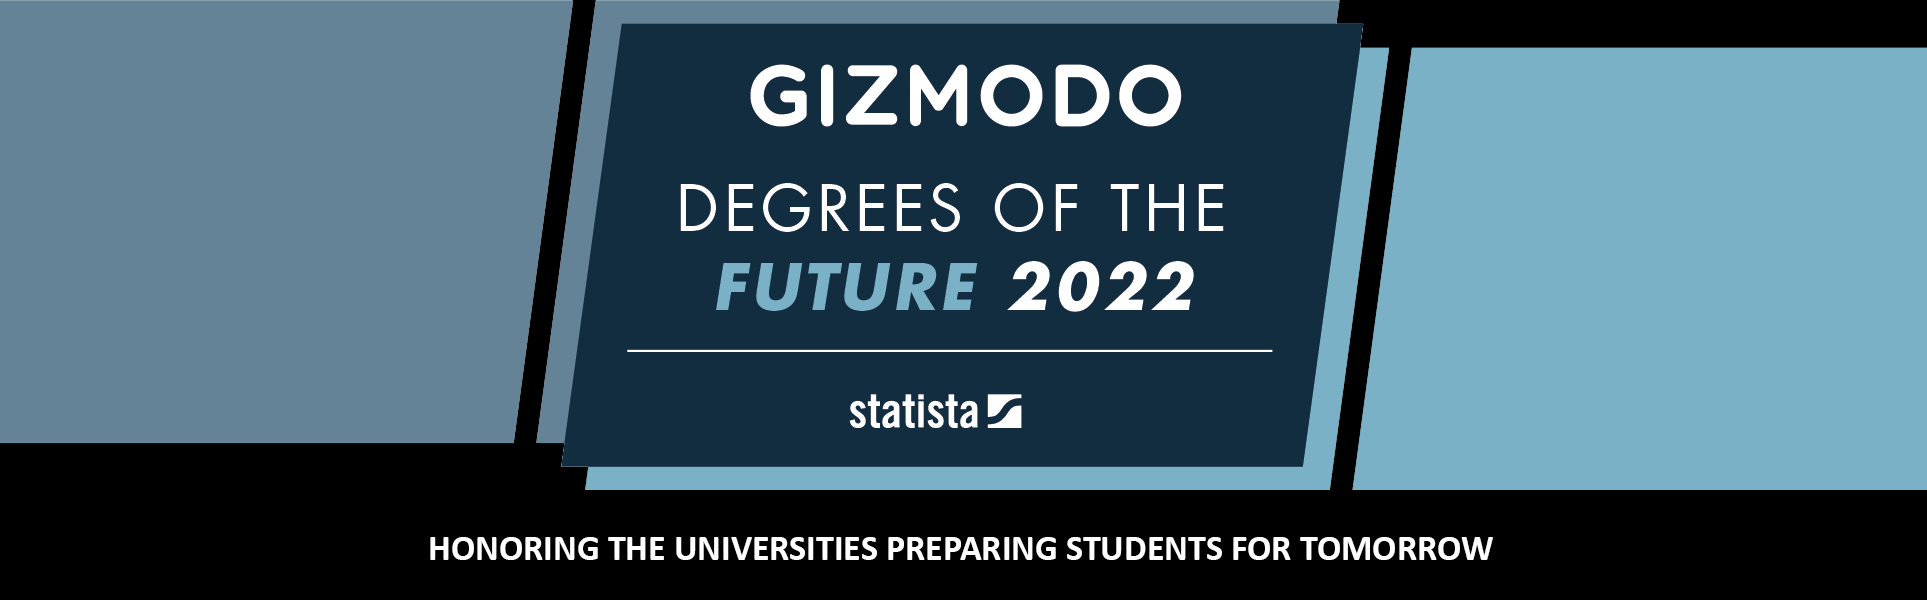 Gizmodo's Degrees of the Future 2022